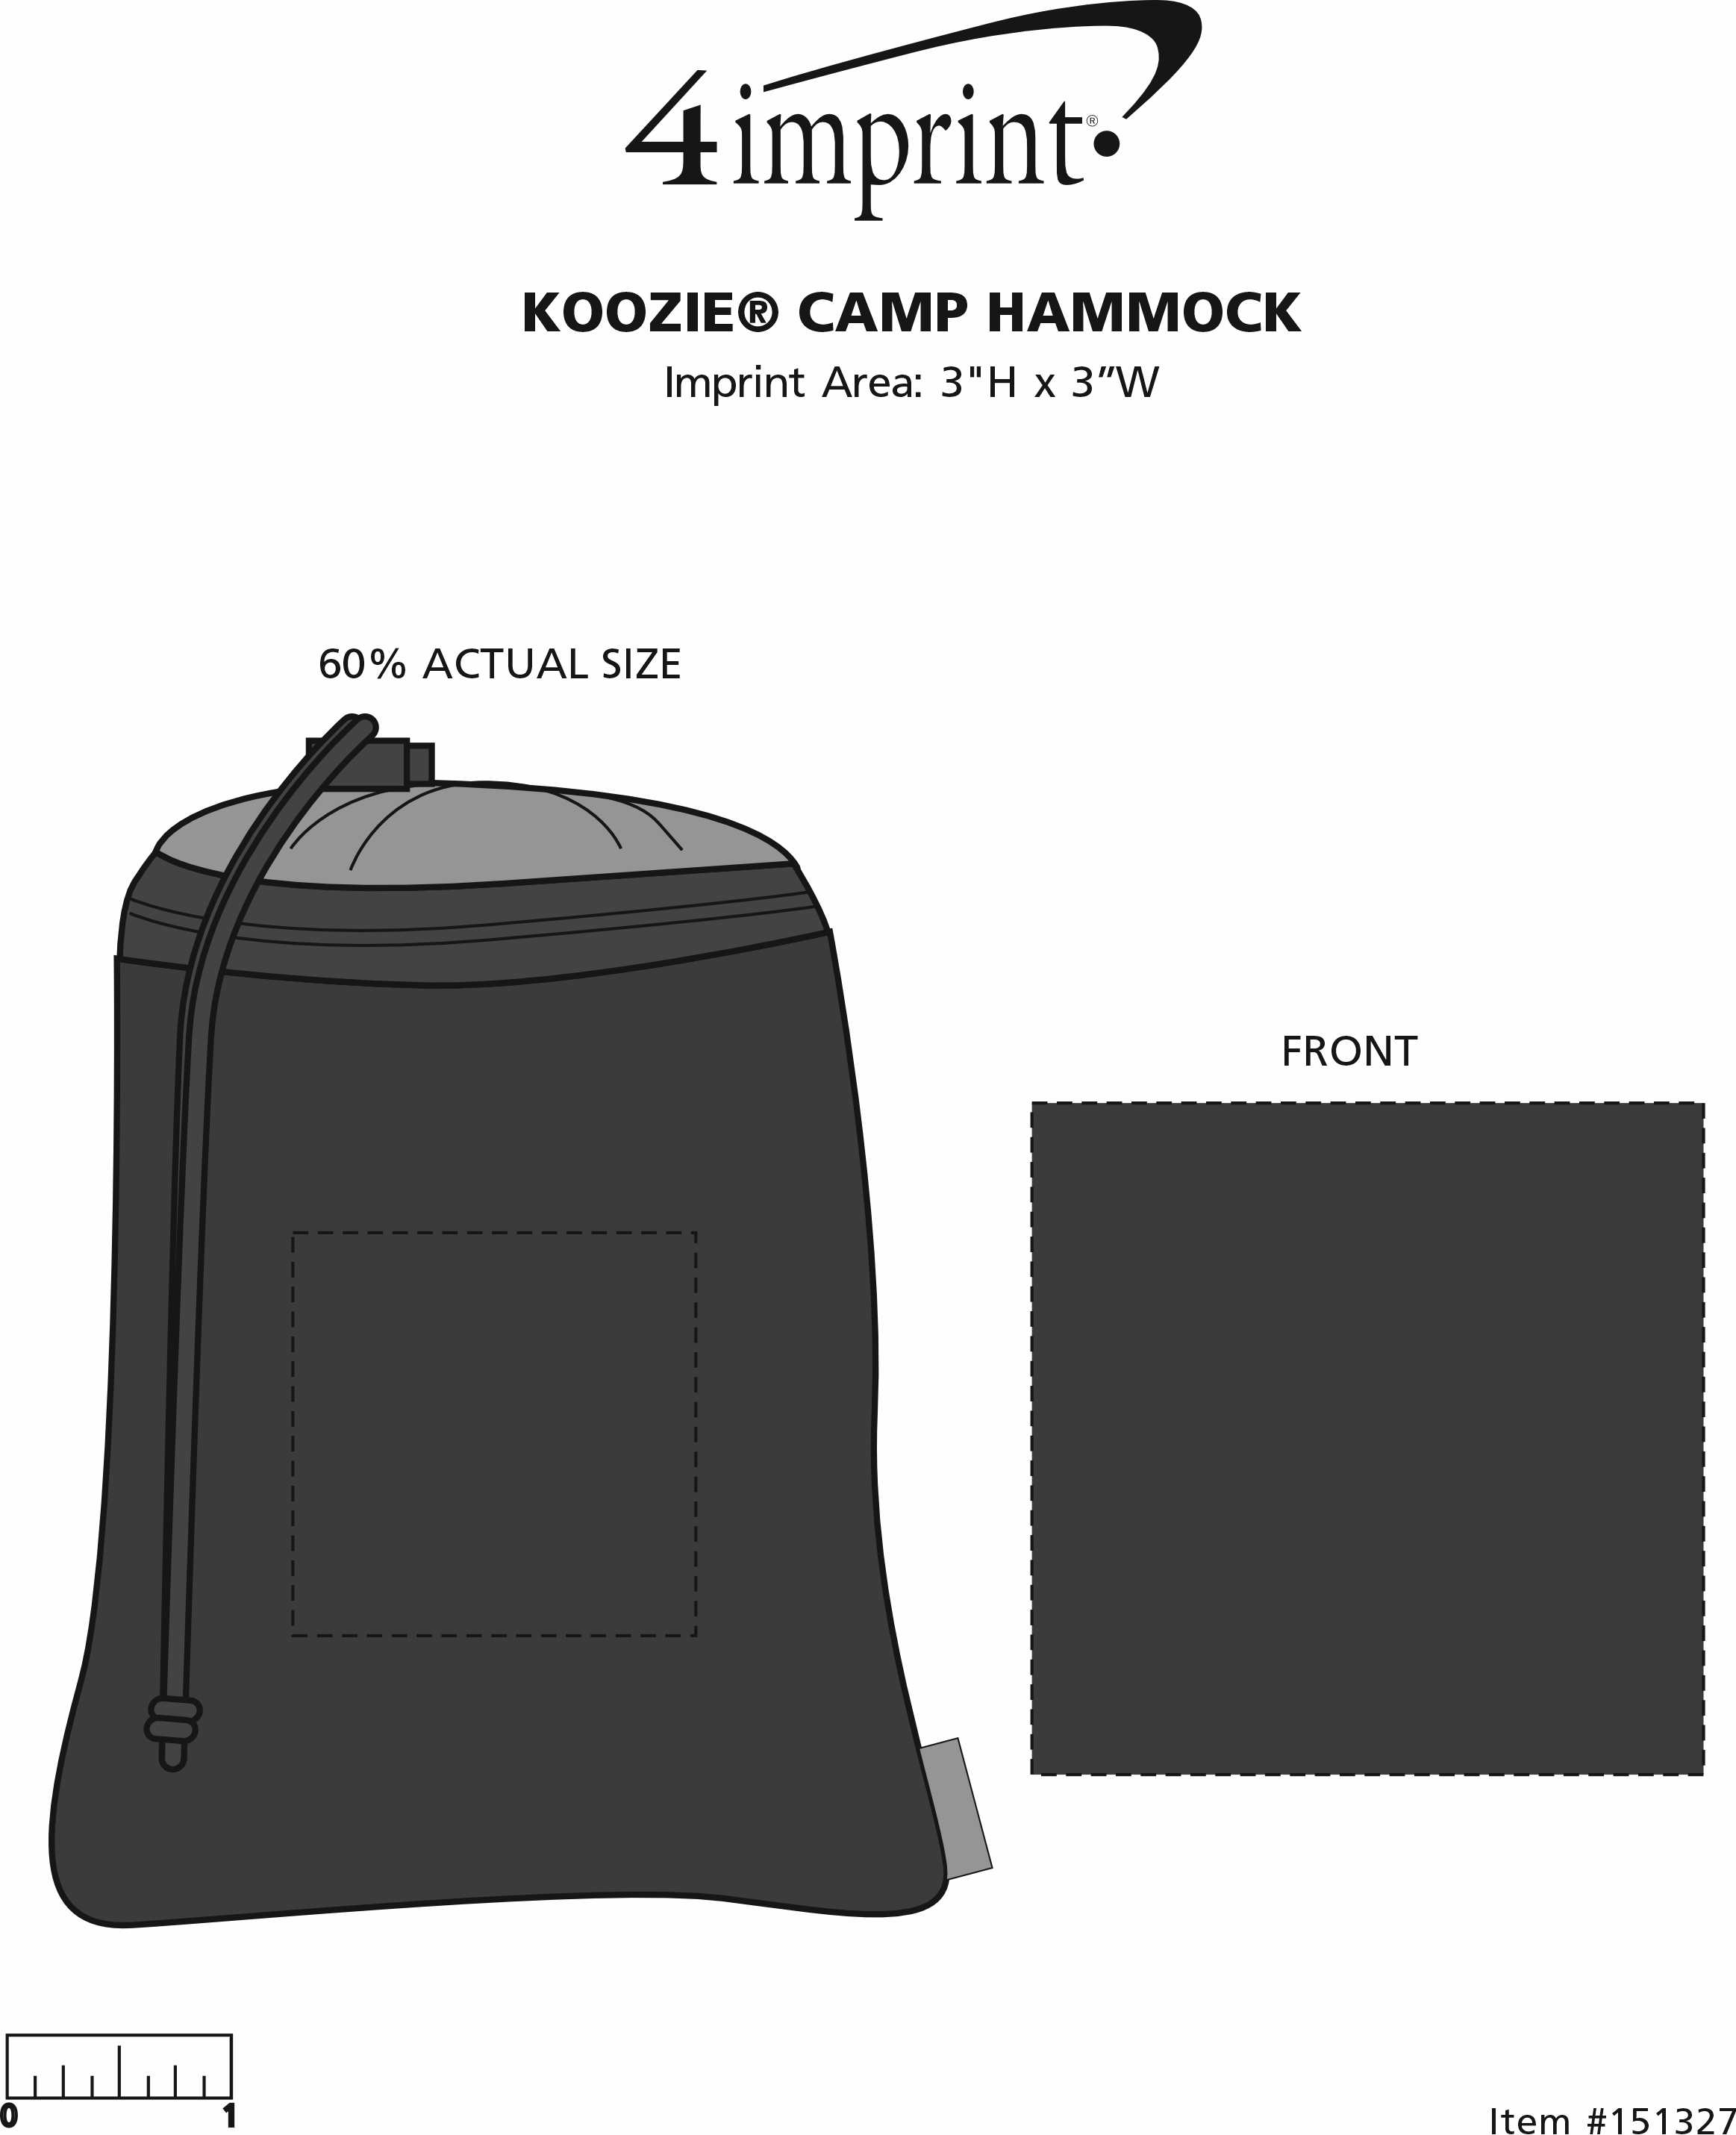 Imprint Area of Koozie® Kamp Hammock